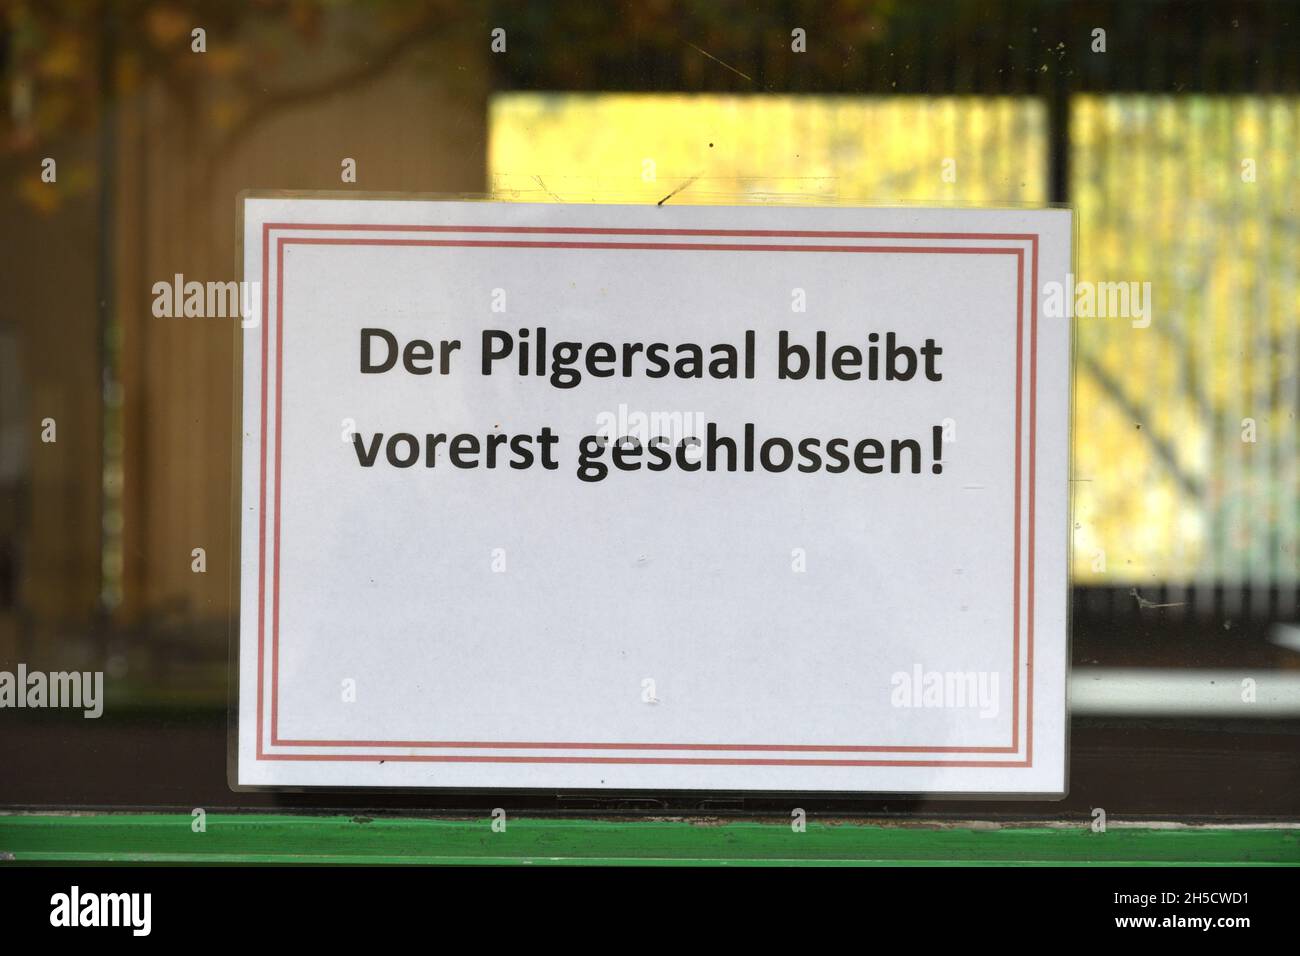 En raison de la pandémie de corona, un signe indique « Der Pilgersaal bleibt vorerst geschlossen! » Banque D'Images